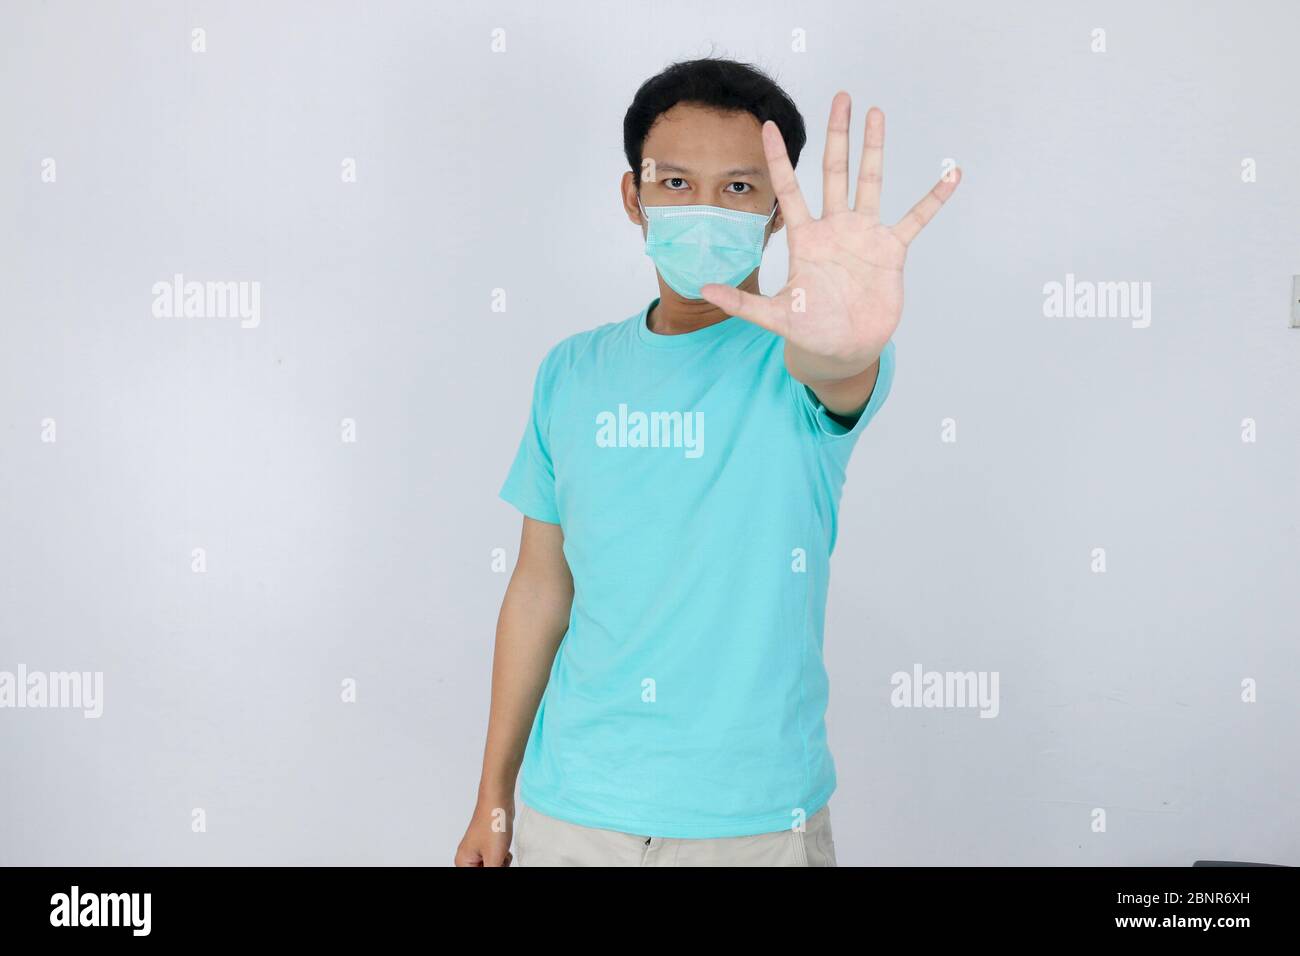 Junge asiatische Mann tragen hygienische Maske ist erschrocken oder Panik mit gesturing Stop Hand. Angst vor Coronavirus-Infektion oder Atemwegserkrankungen wie f Stockfoto